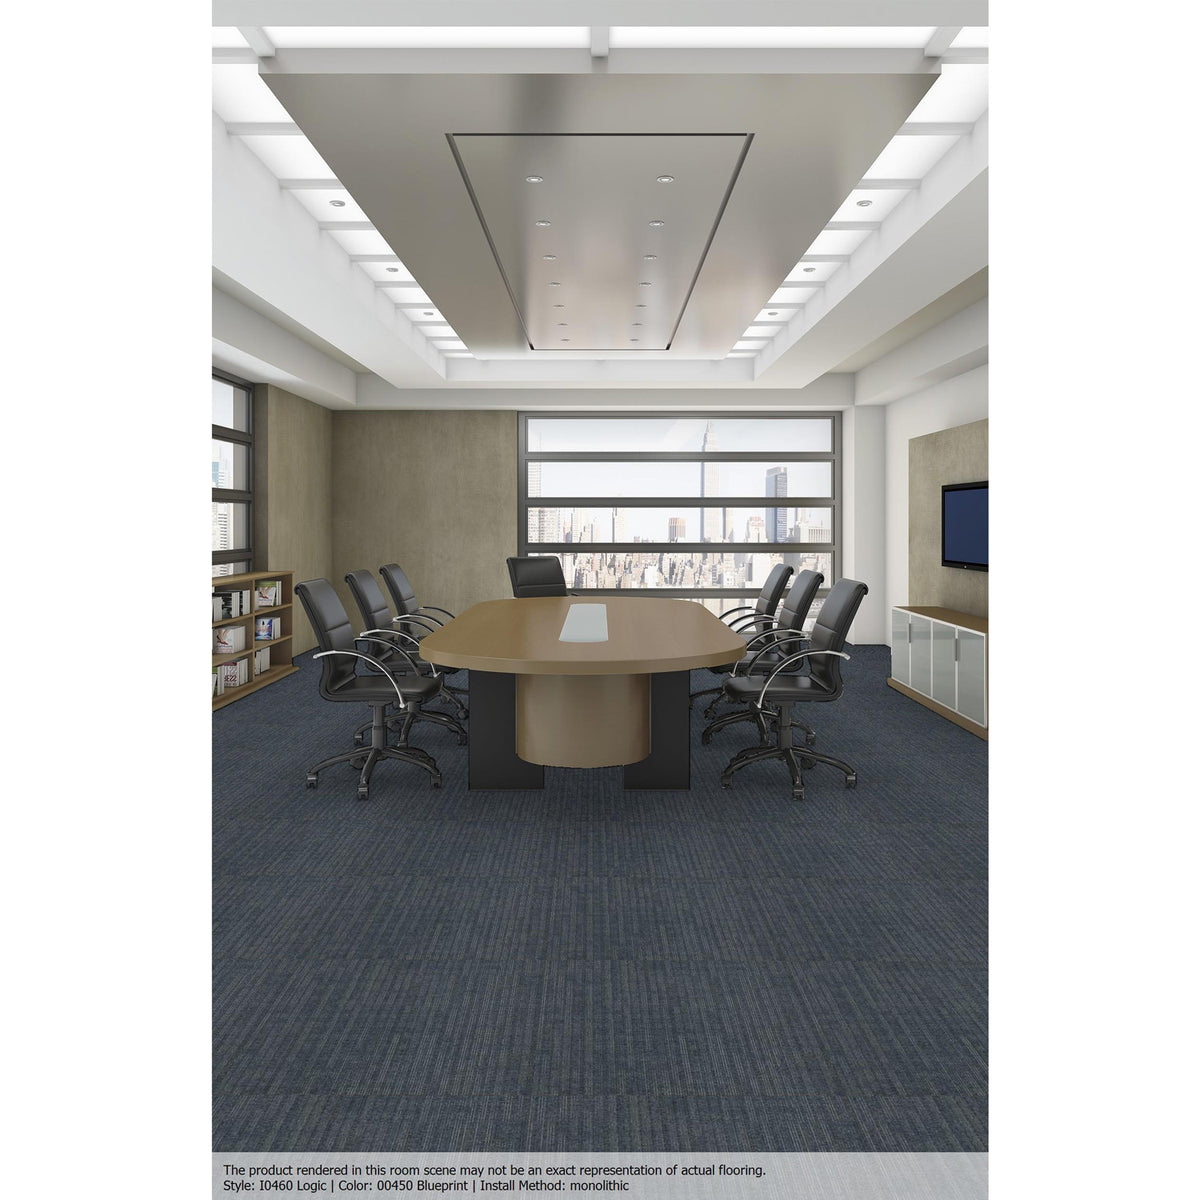 Patcraft – Rational Collection – Logic Commercial Carpet Tile – Blueprint